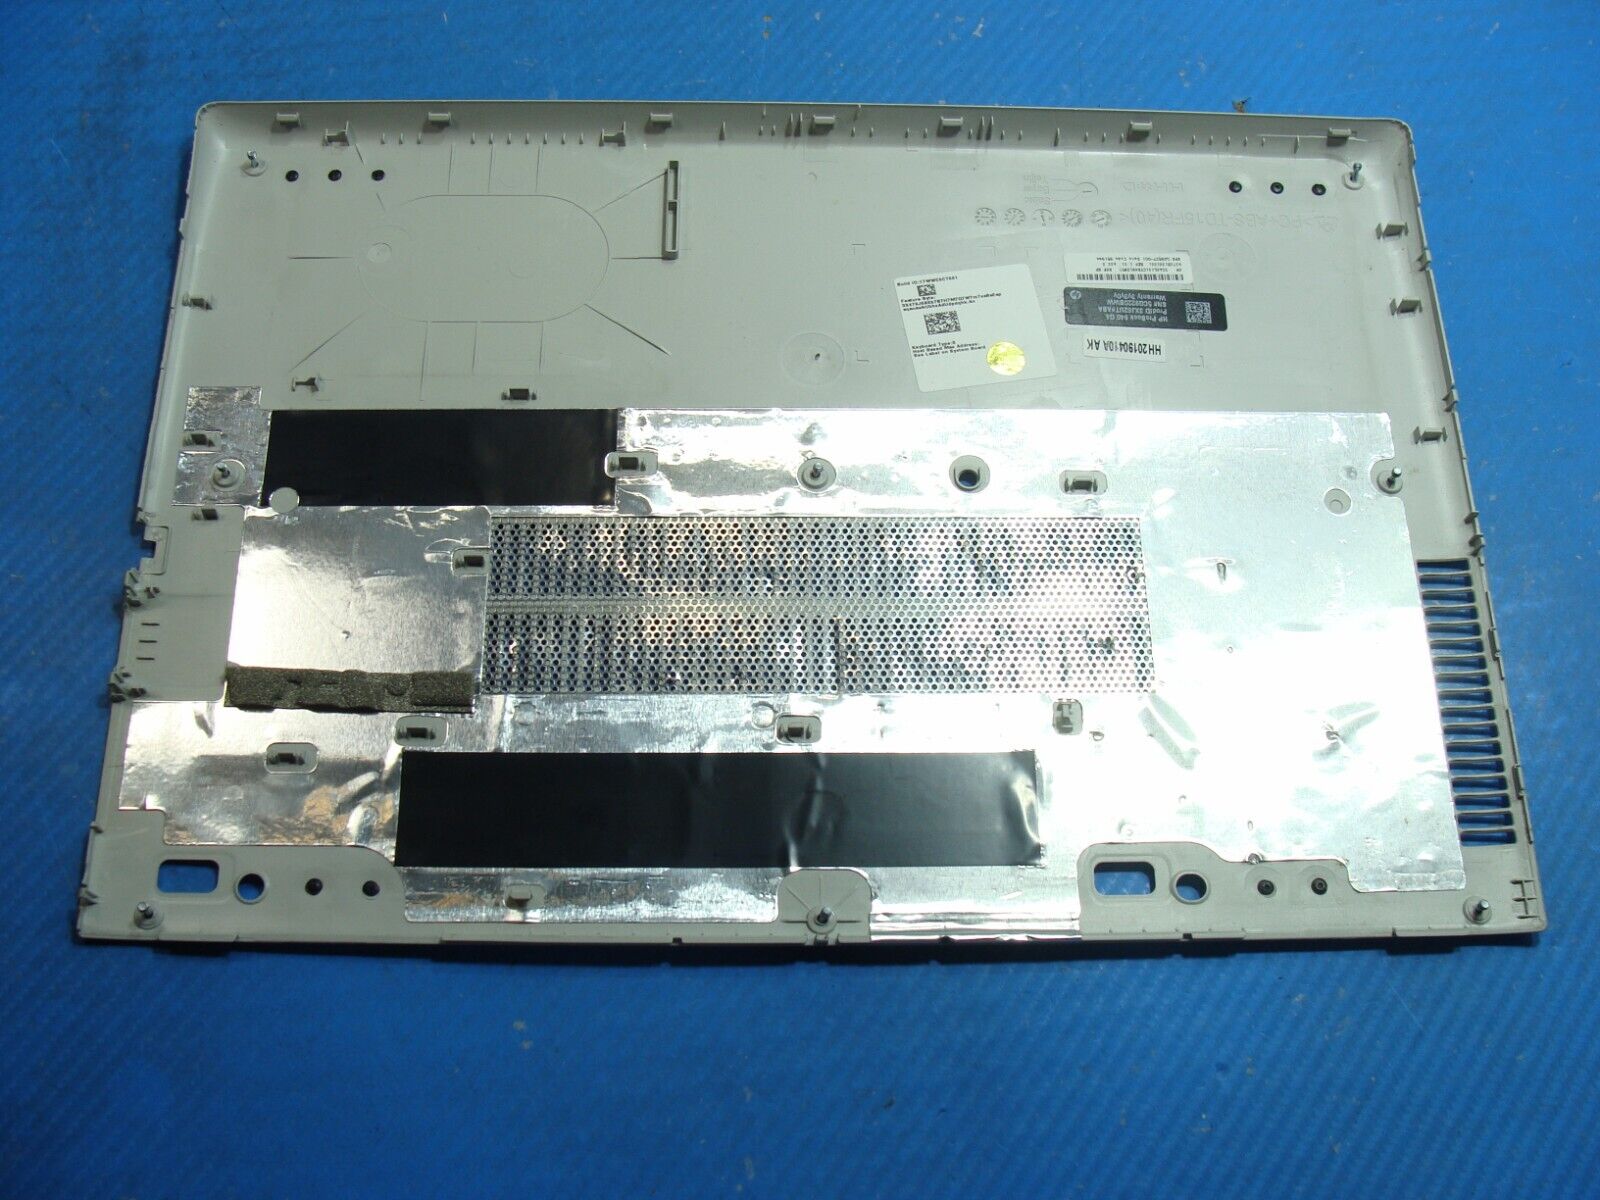 HP ProBook 640 G4 14